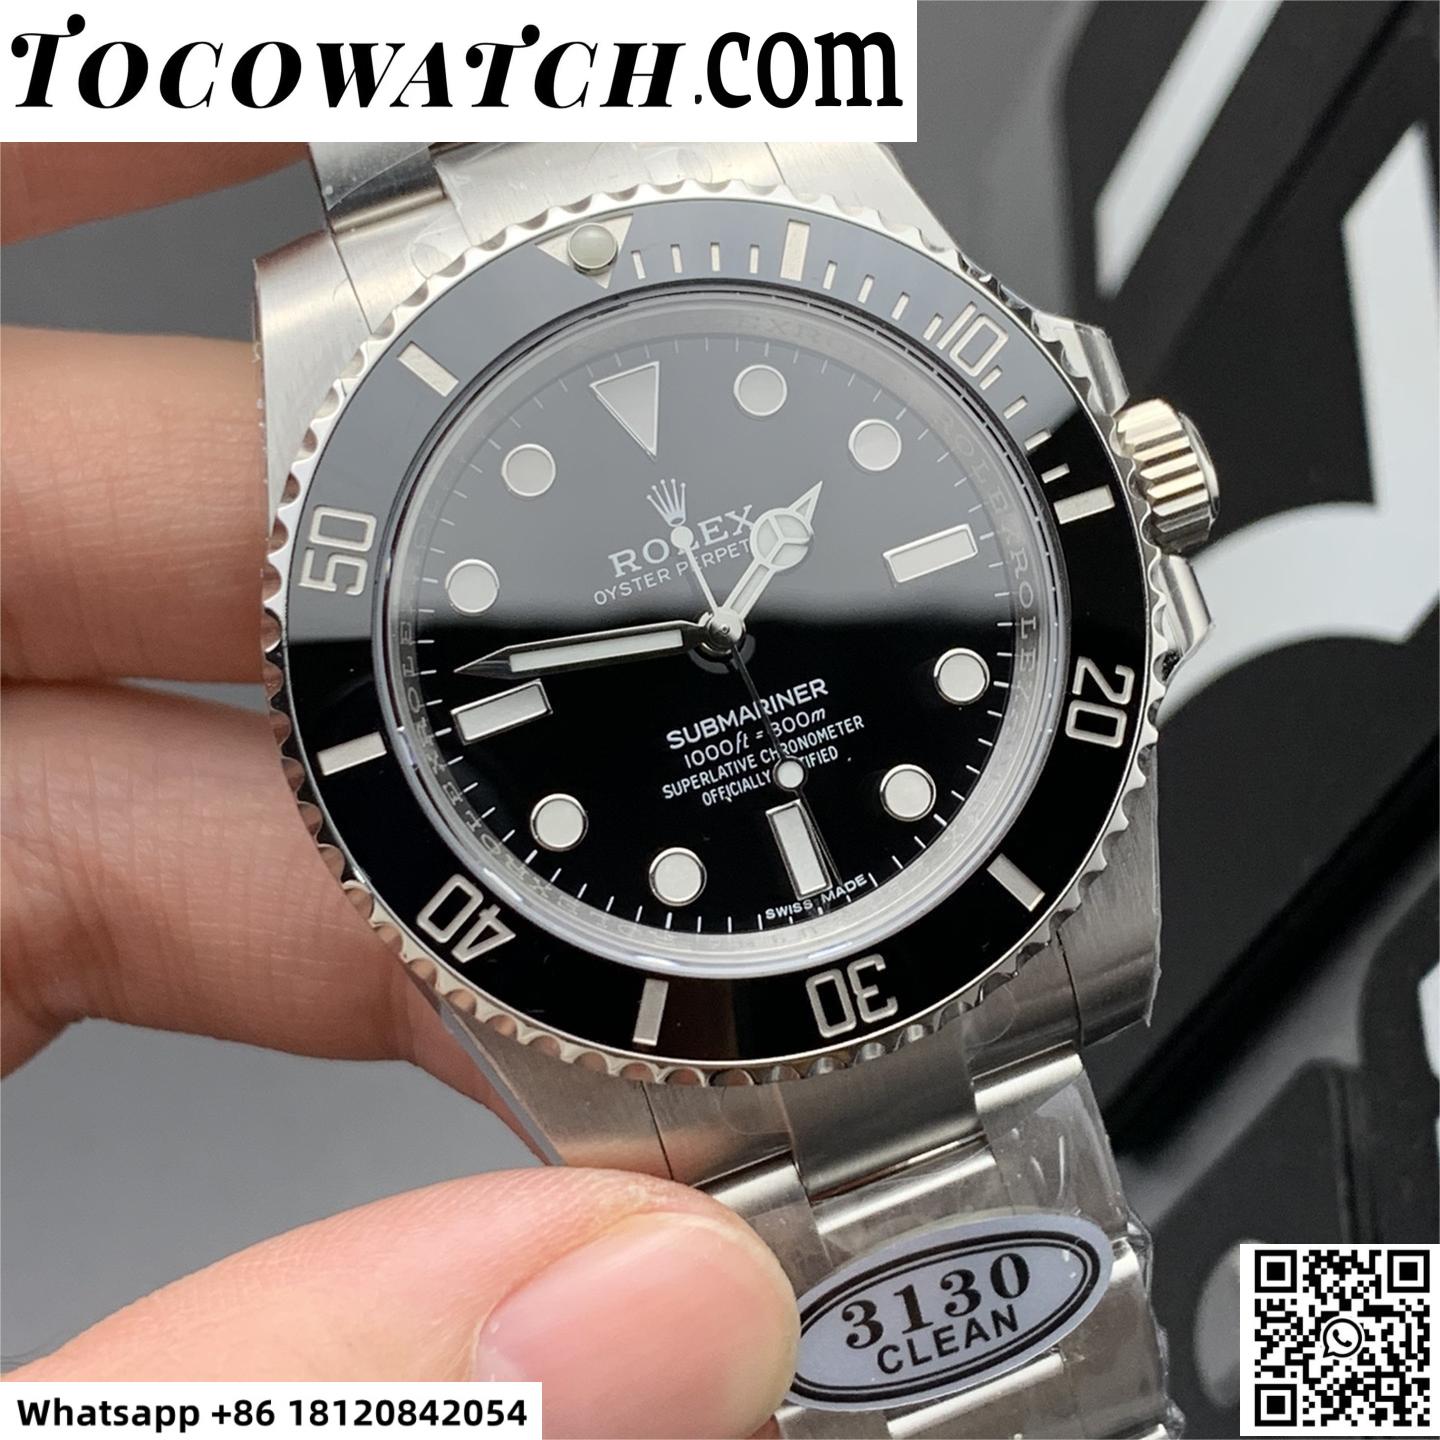 Rolex Submariner Watch - 114060-97200-tocowatch